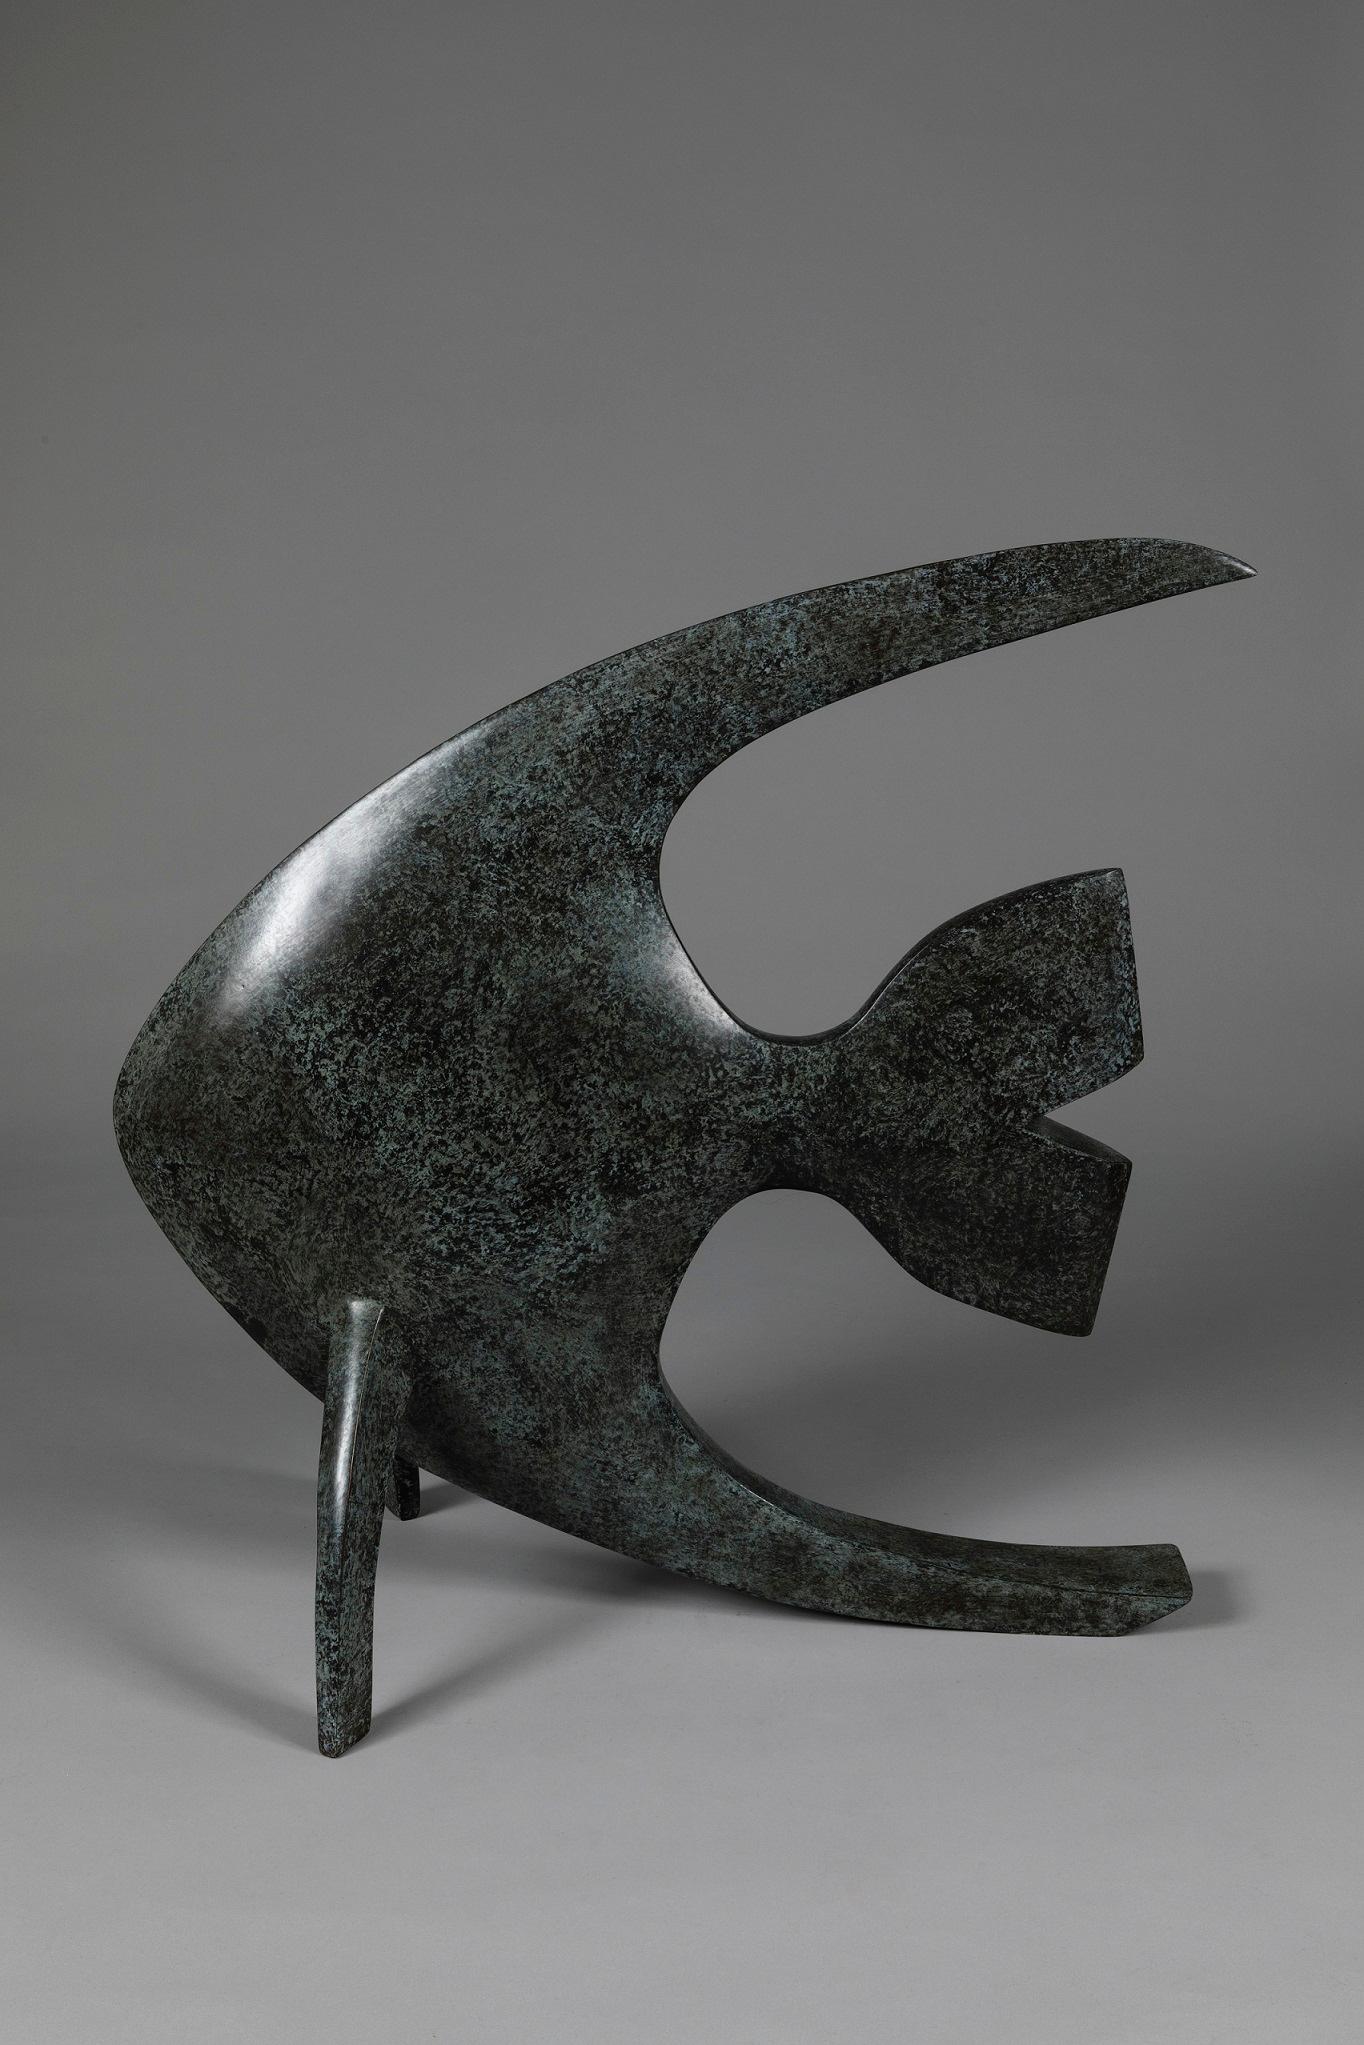 Acqua ist eine Bronzeskulptur eines Fisches von Marie Louise Sorbac. 63 cm × 32 cm × 63 cm.

Diese Skulptur ist Teil einer Serie, die die Natur und das Tierreich feiert. Es ist in einer limitierten Auflage von 8 Exemplaren und 4 Künstlerabzügen